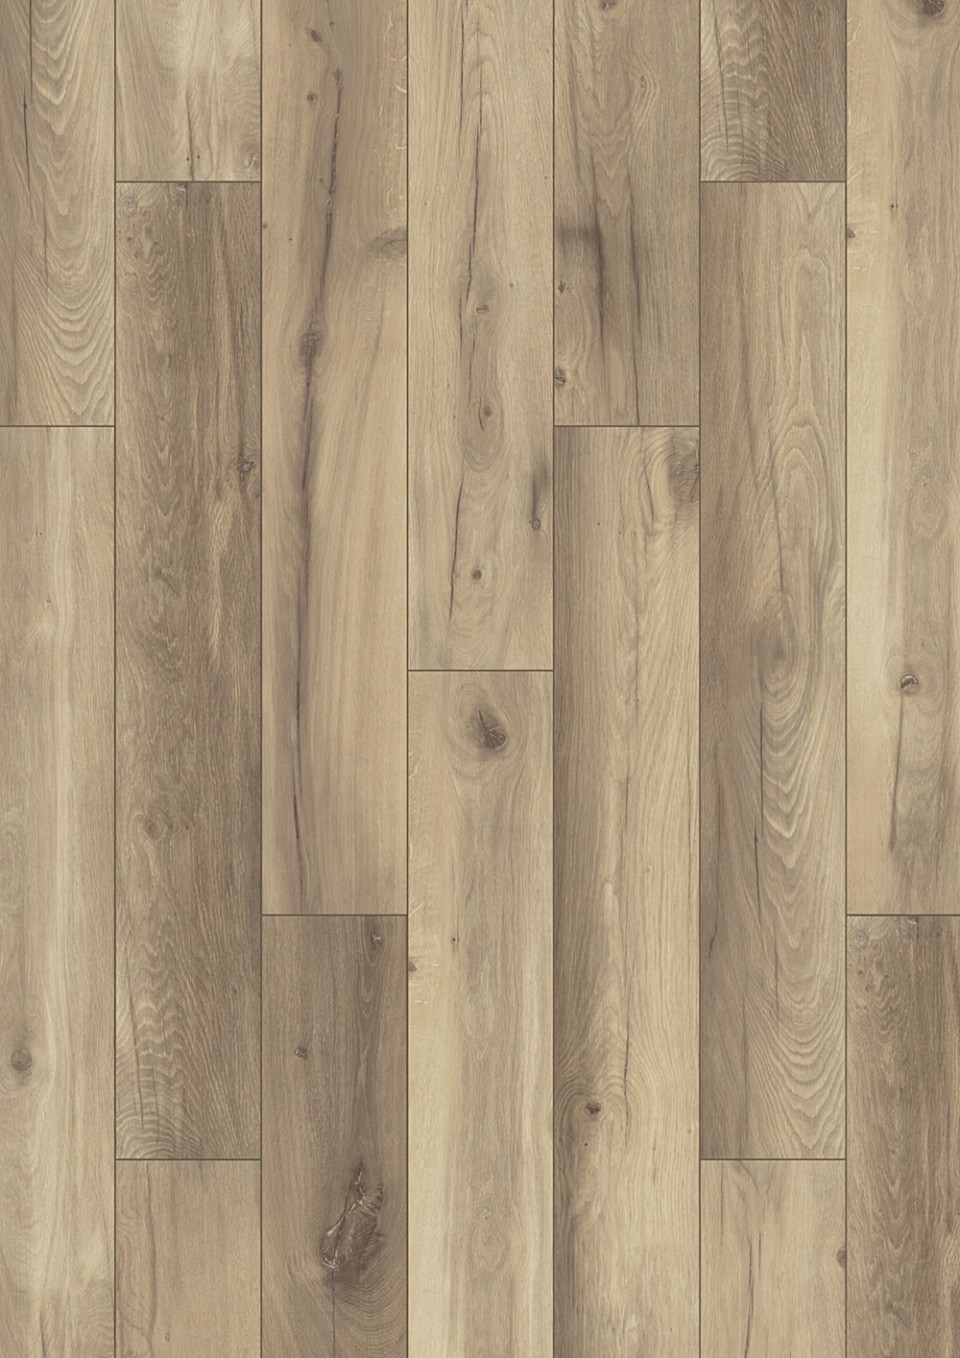 Alpod Floor Expert BINPRO-1538/0 Laminlt padl, CLASSIC AQUA, 1538 oak alamos, 8 mm, 1 svos